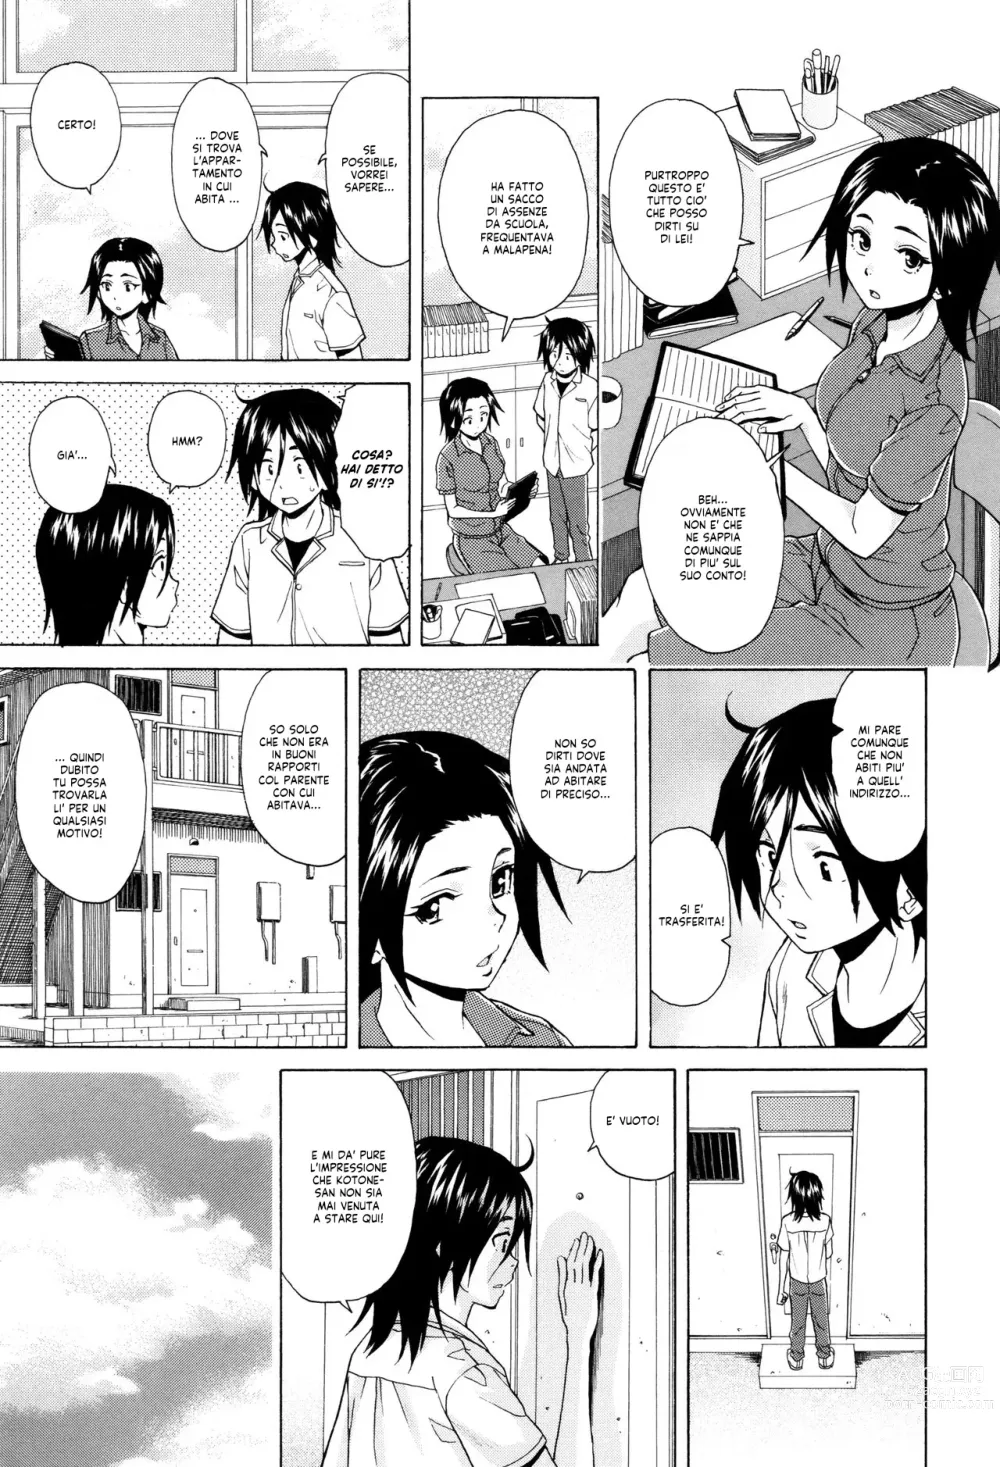 Page 191 of manga Segreti, Suicidi e Sorelle (decensored)